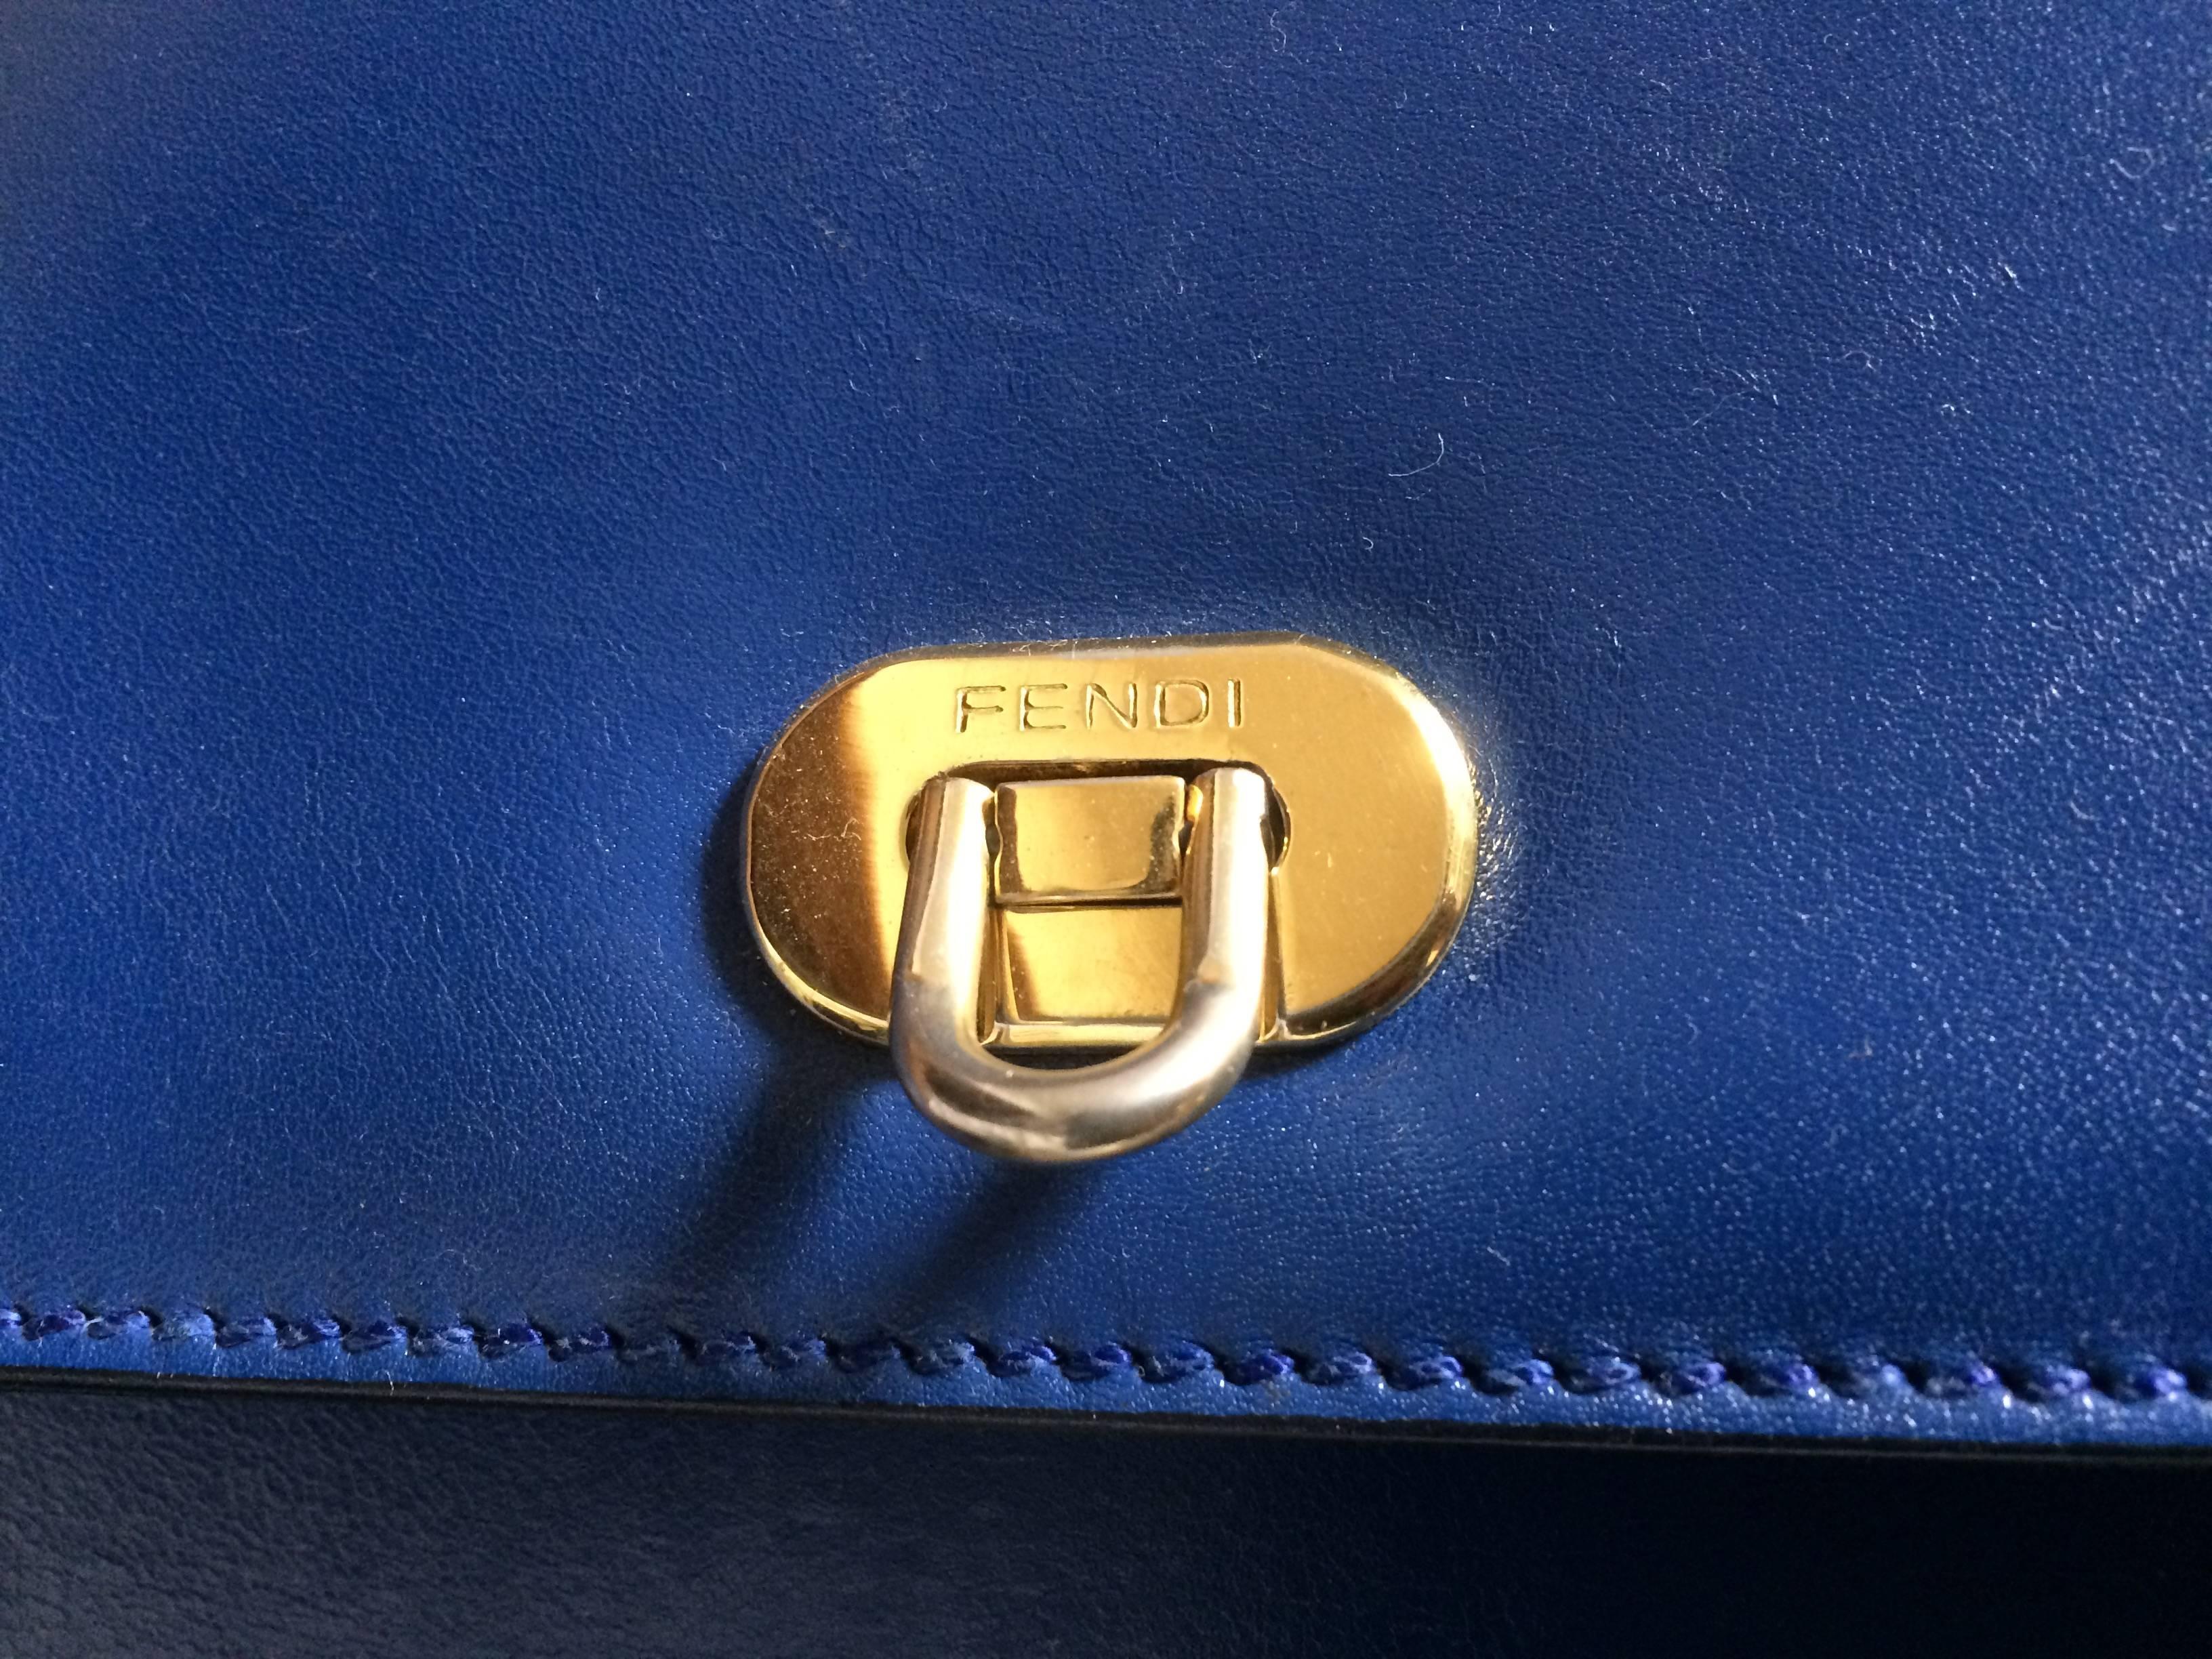 Vintage FENDI blue leather classic kelly style handbag with iconic ...